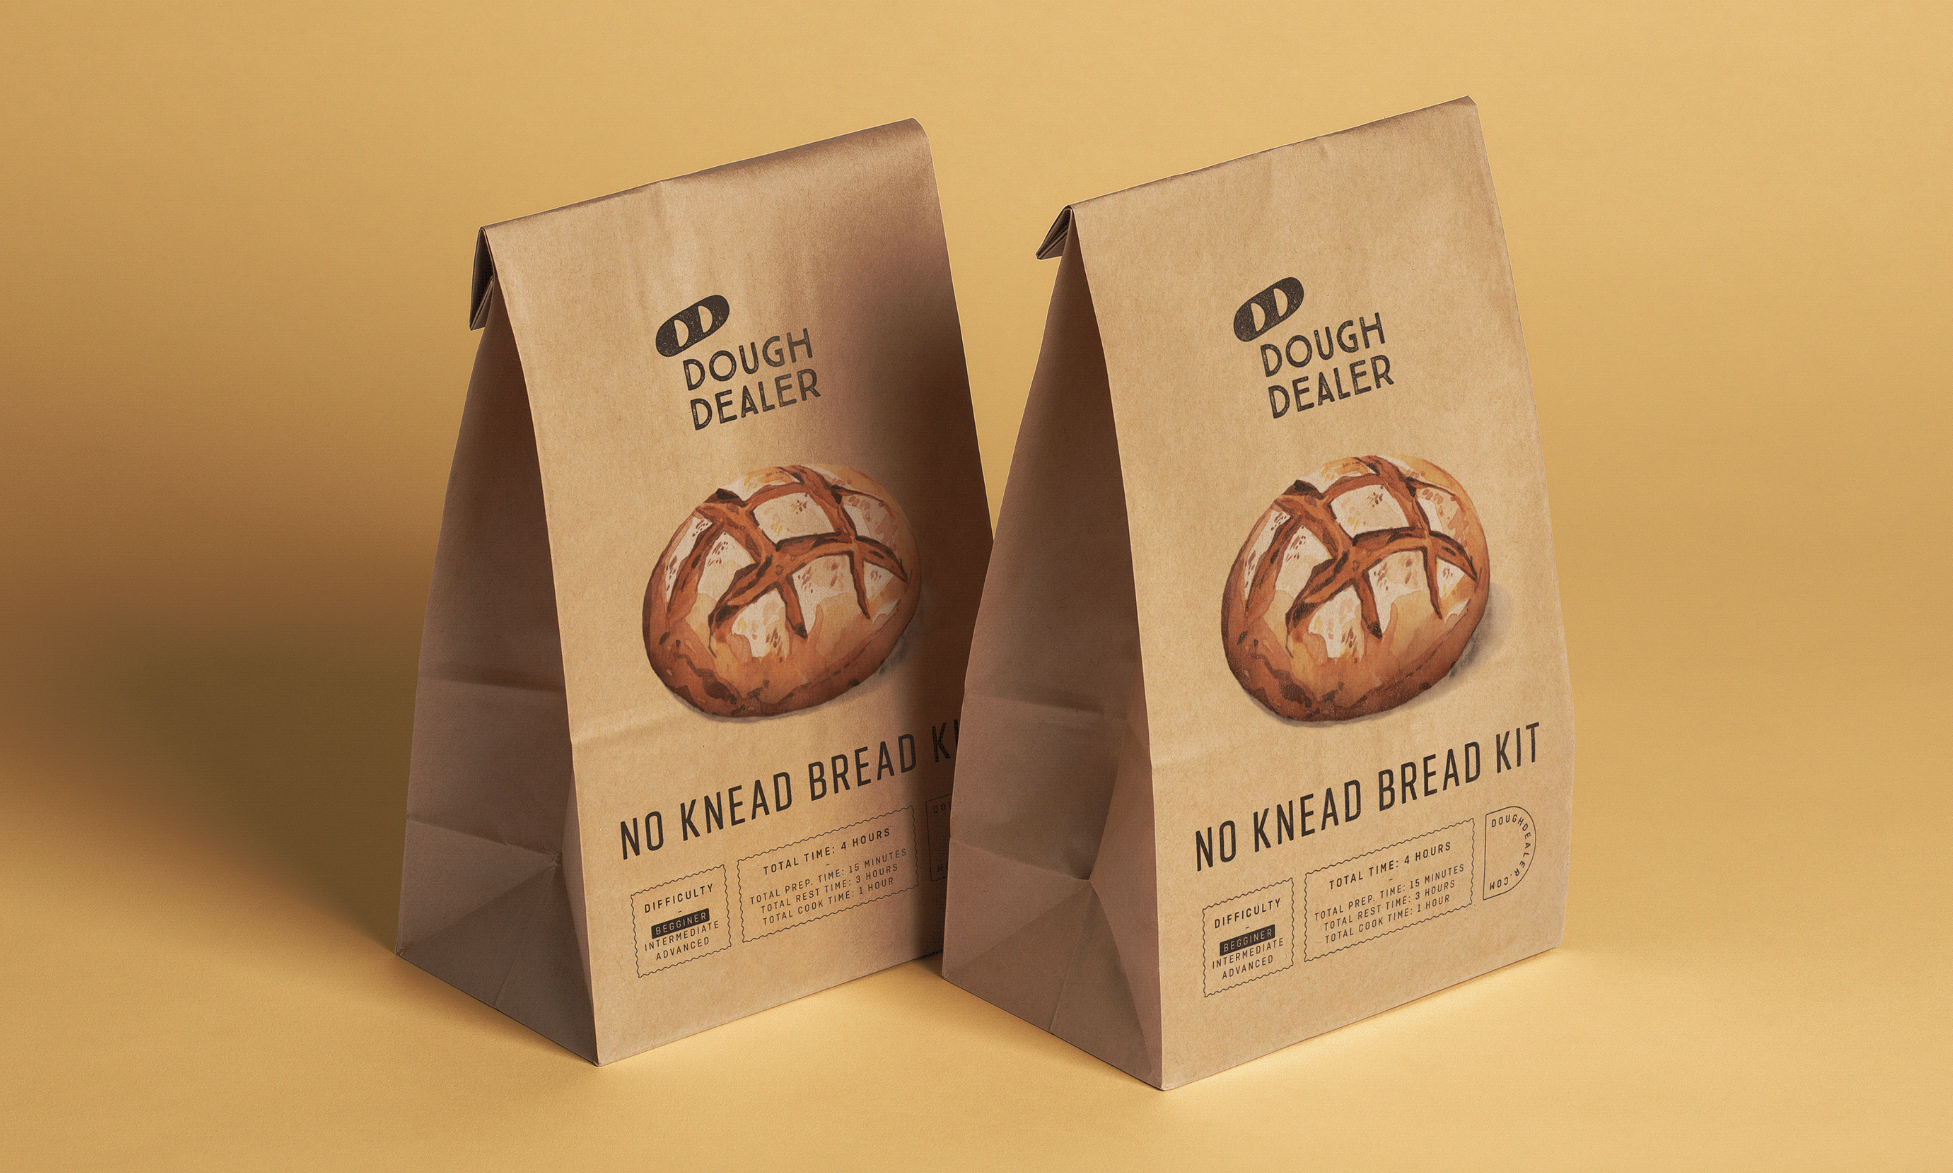 No Knead Bread Kit